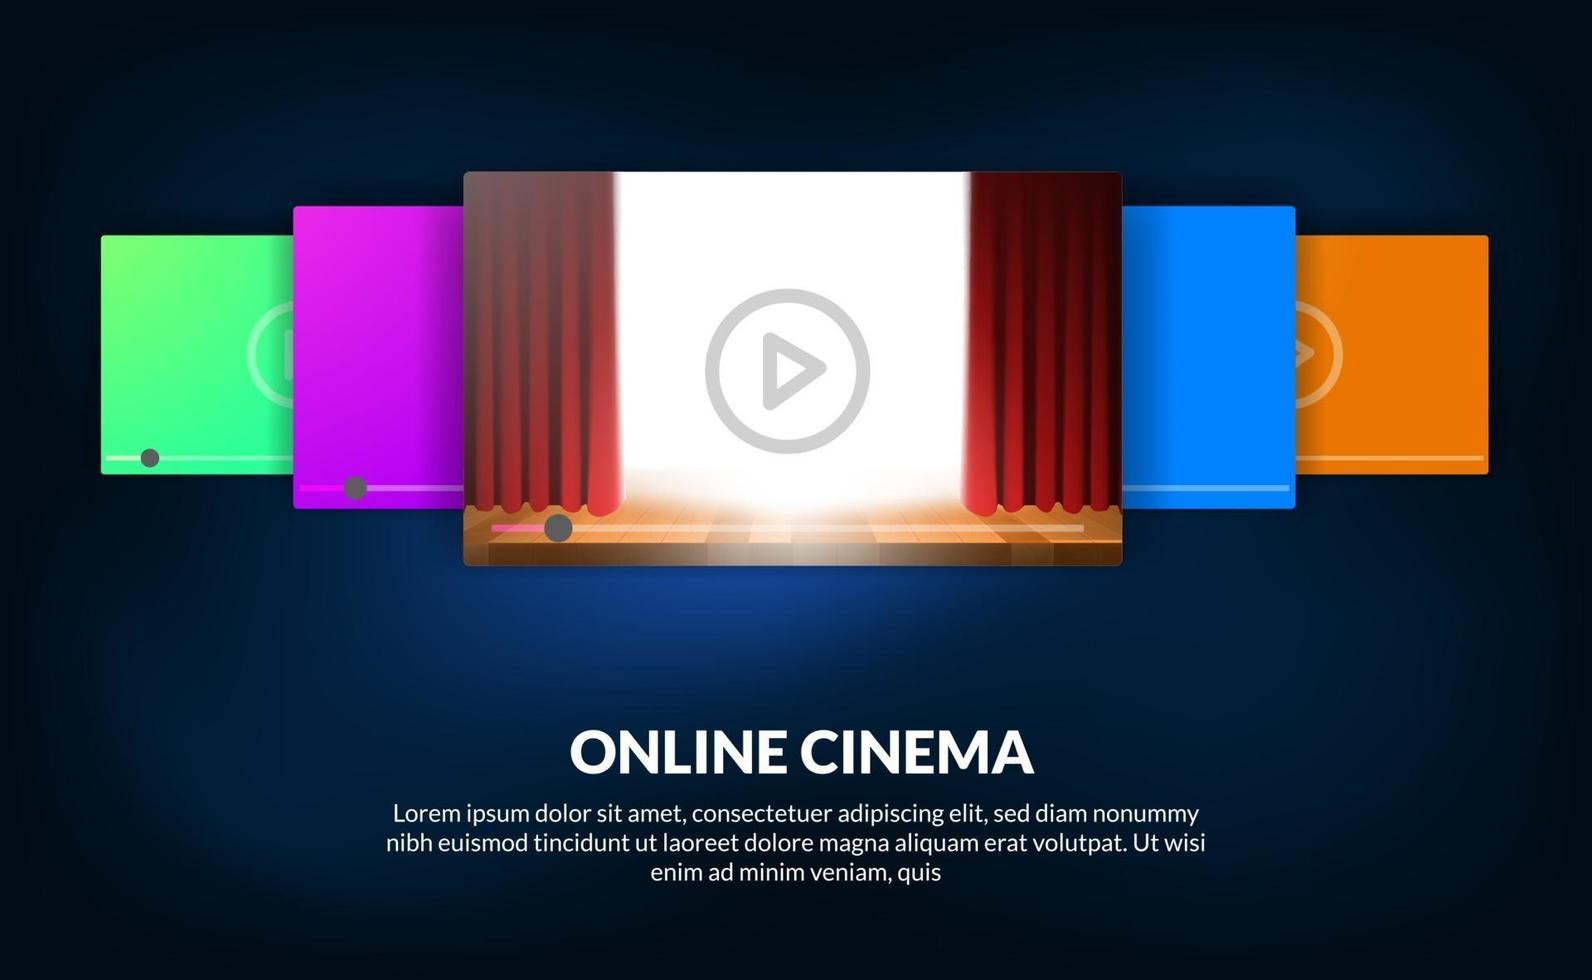 carrousel van films voor online streaming video bioscoopconcept met rode gordijn-show voor filmpreview vector